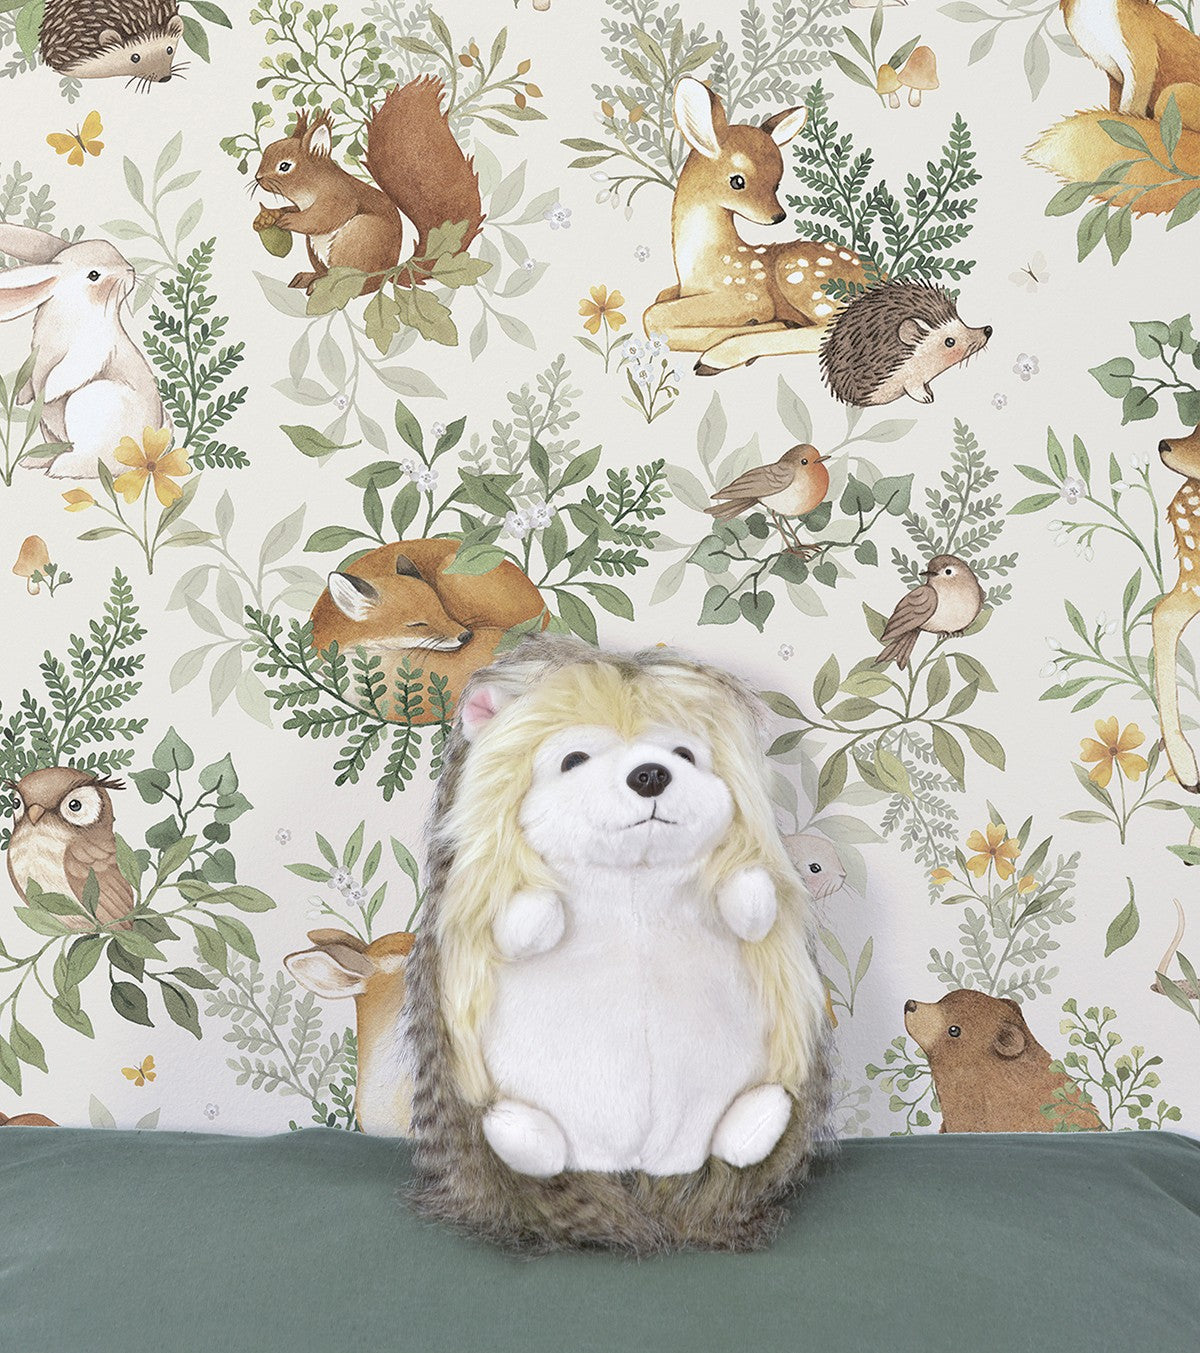 FOREST - Children's wallpaper - Forest animals motif